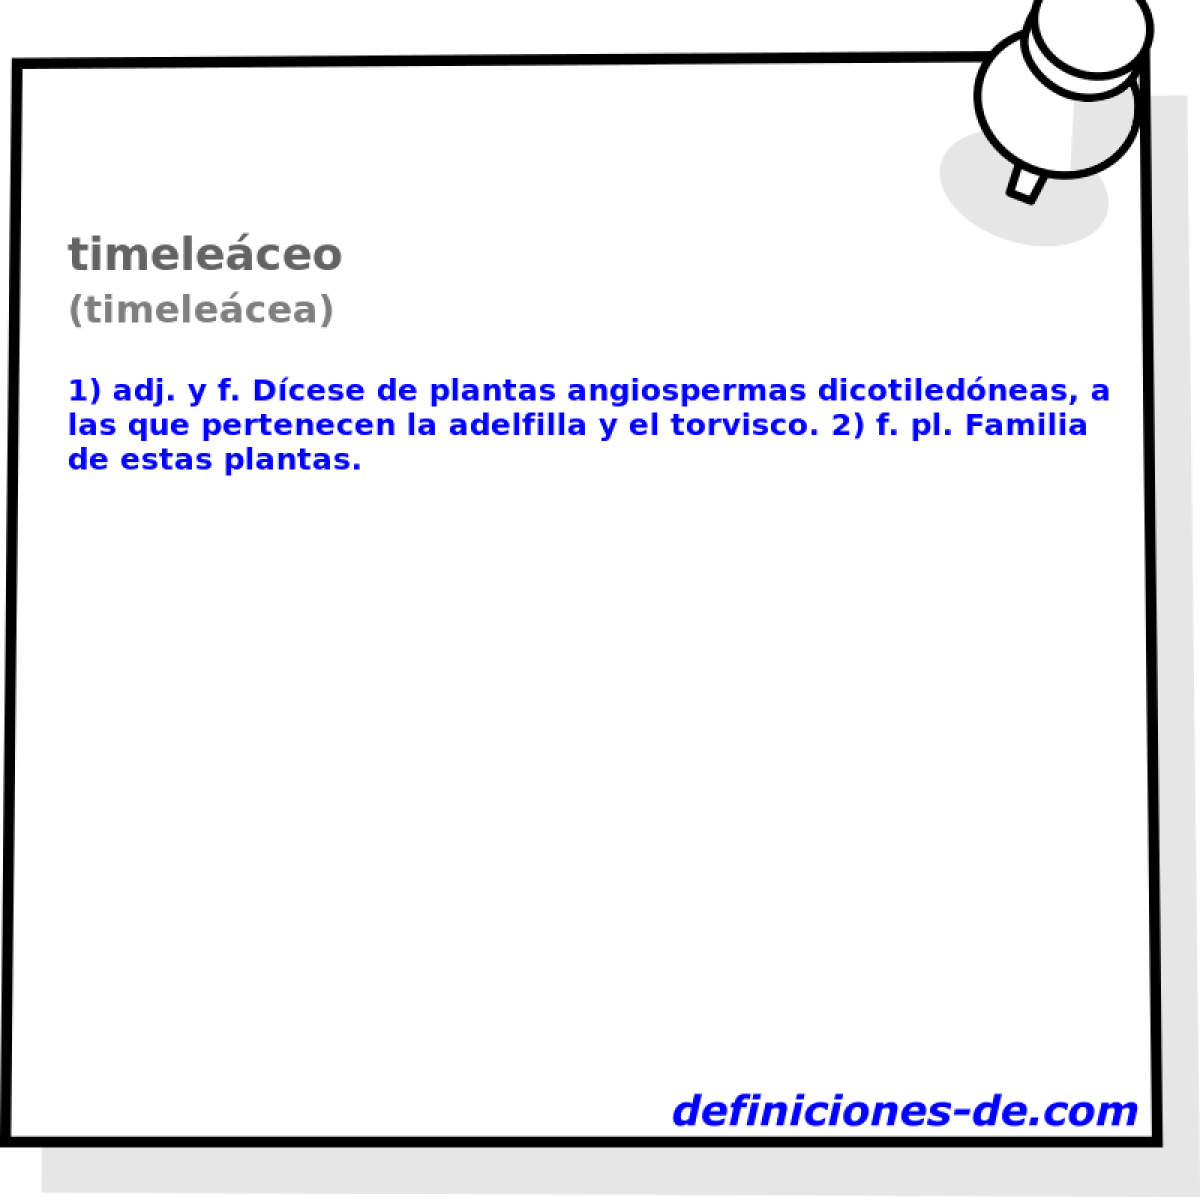 timeleceo (timelecea)